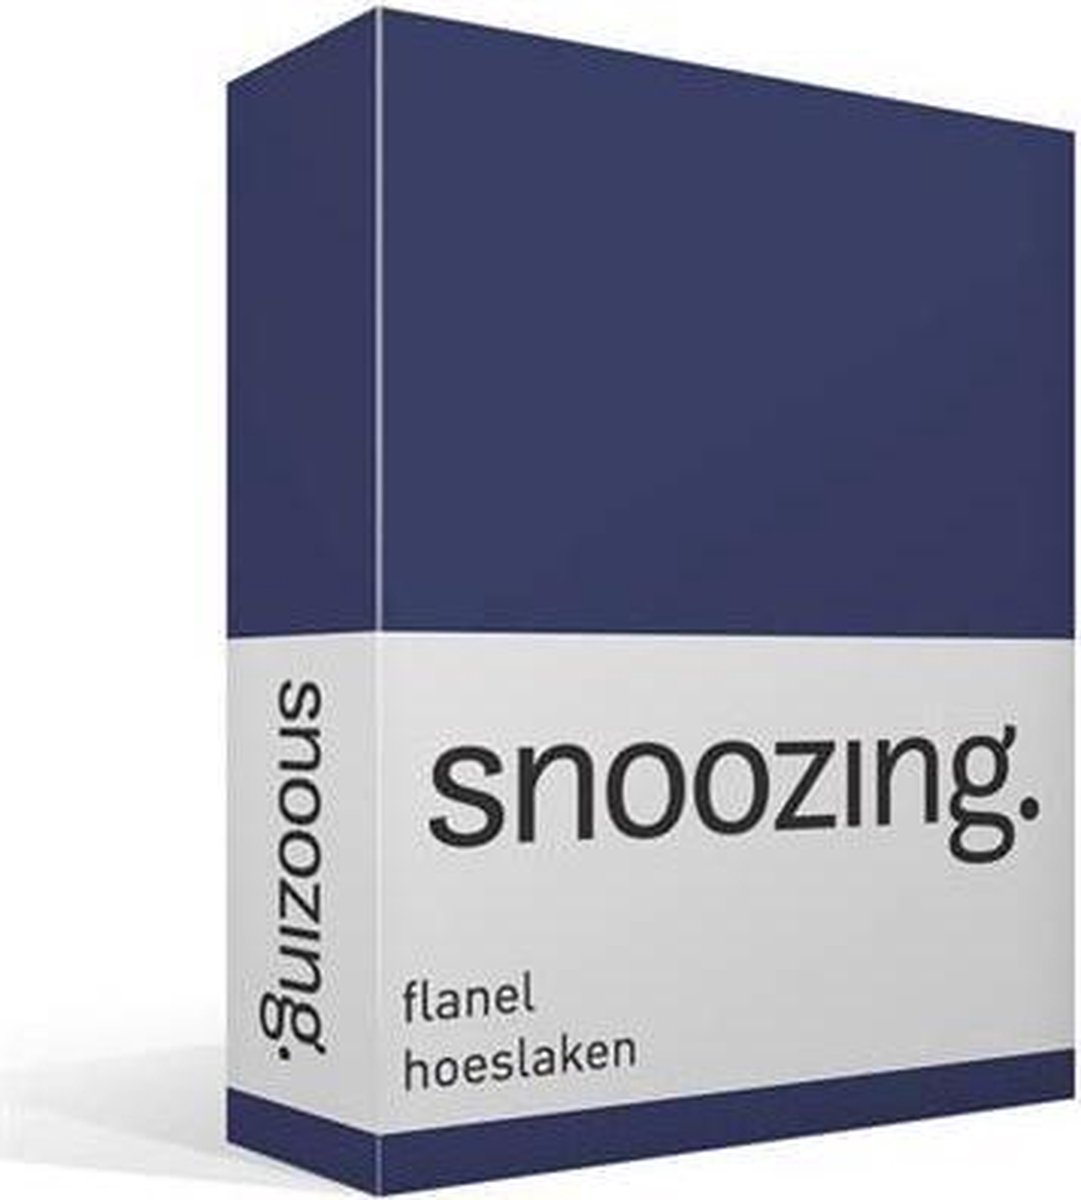 Snoozing Flanel Hoeslaken - 100% Geruwde Flanel-katoen - 2-persoons (120x200 Cm) - Navy - Blauw